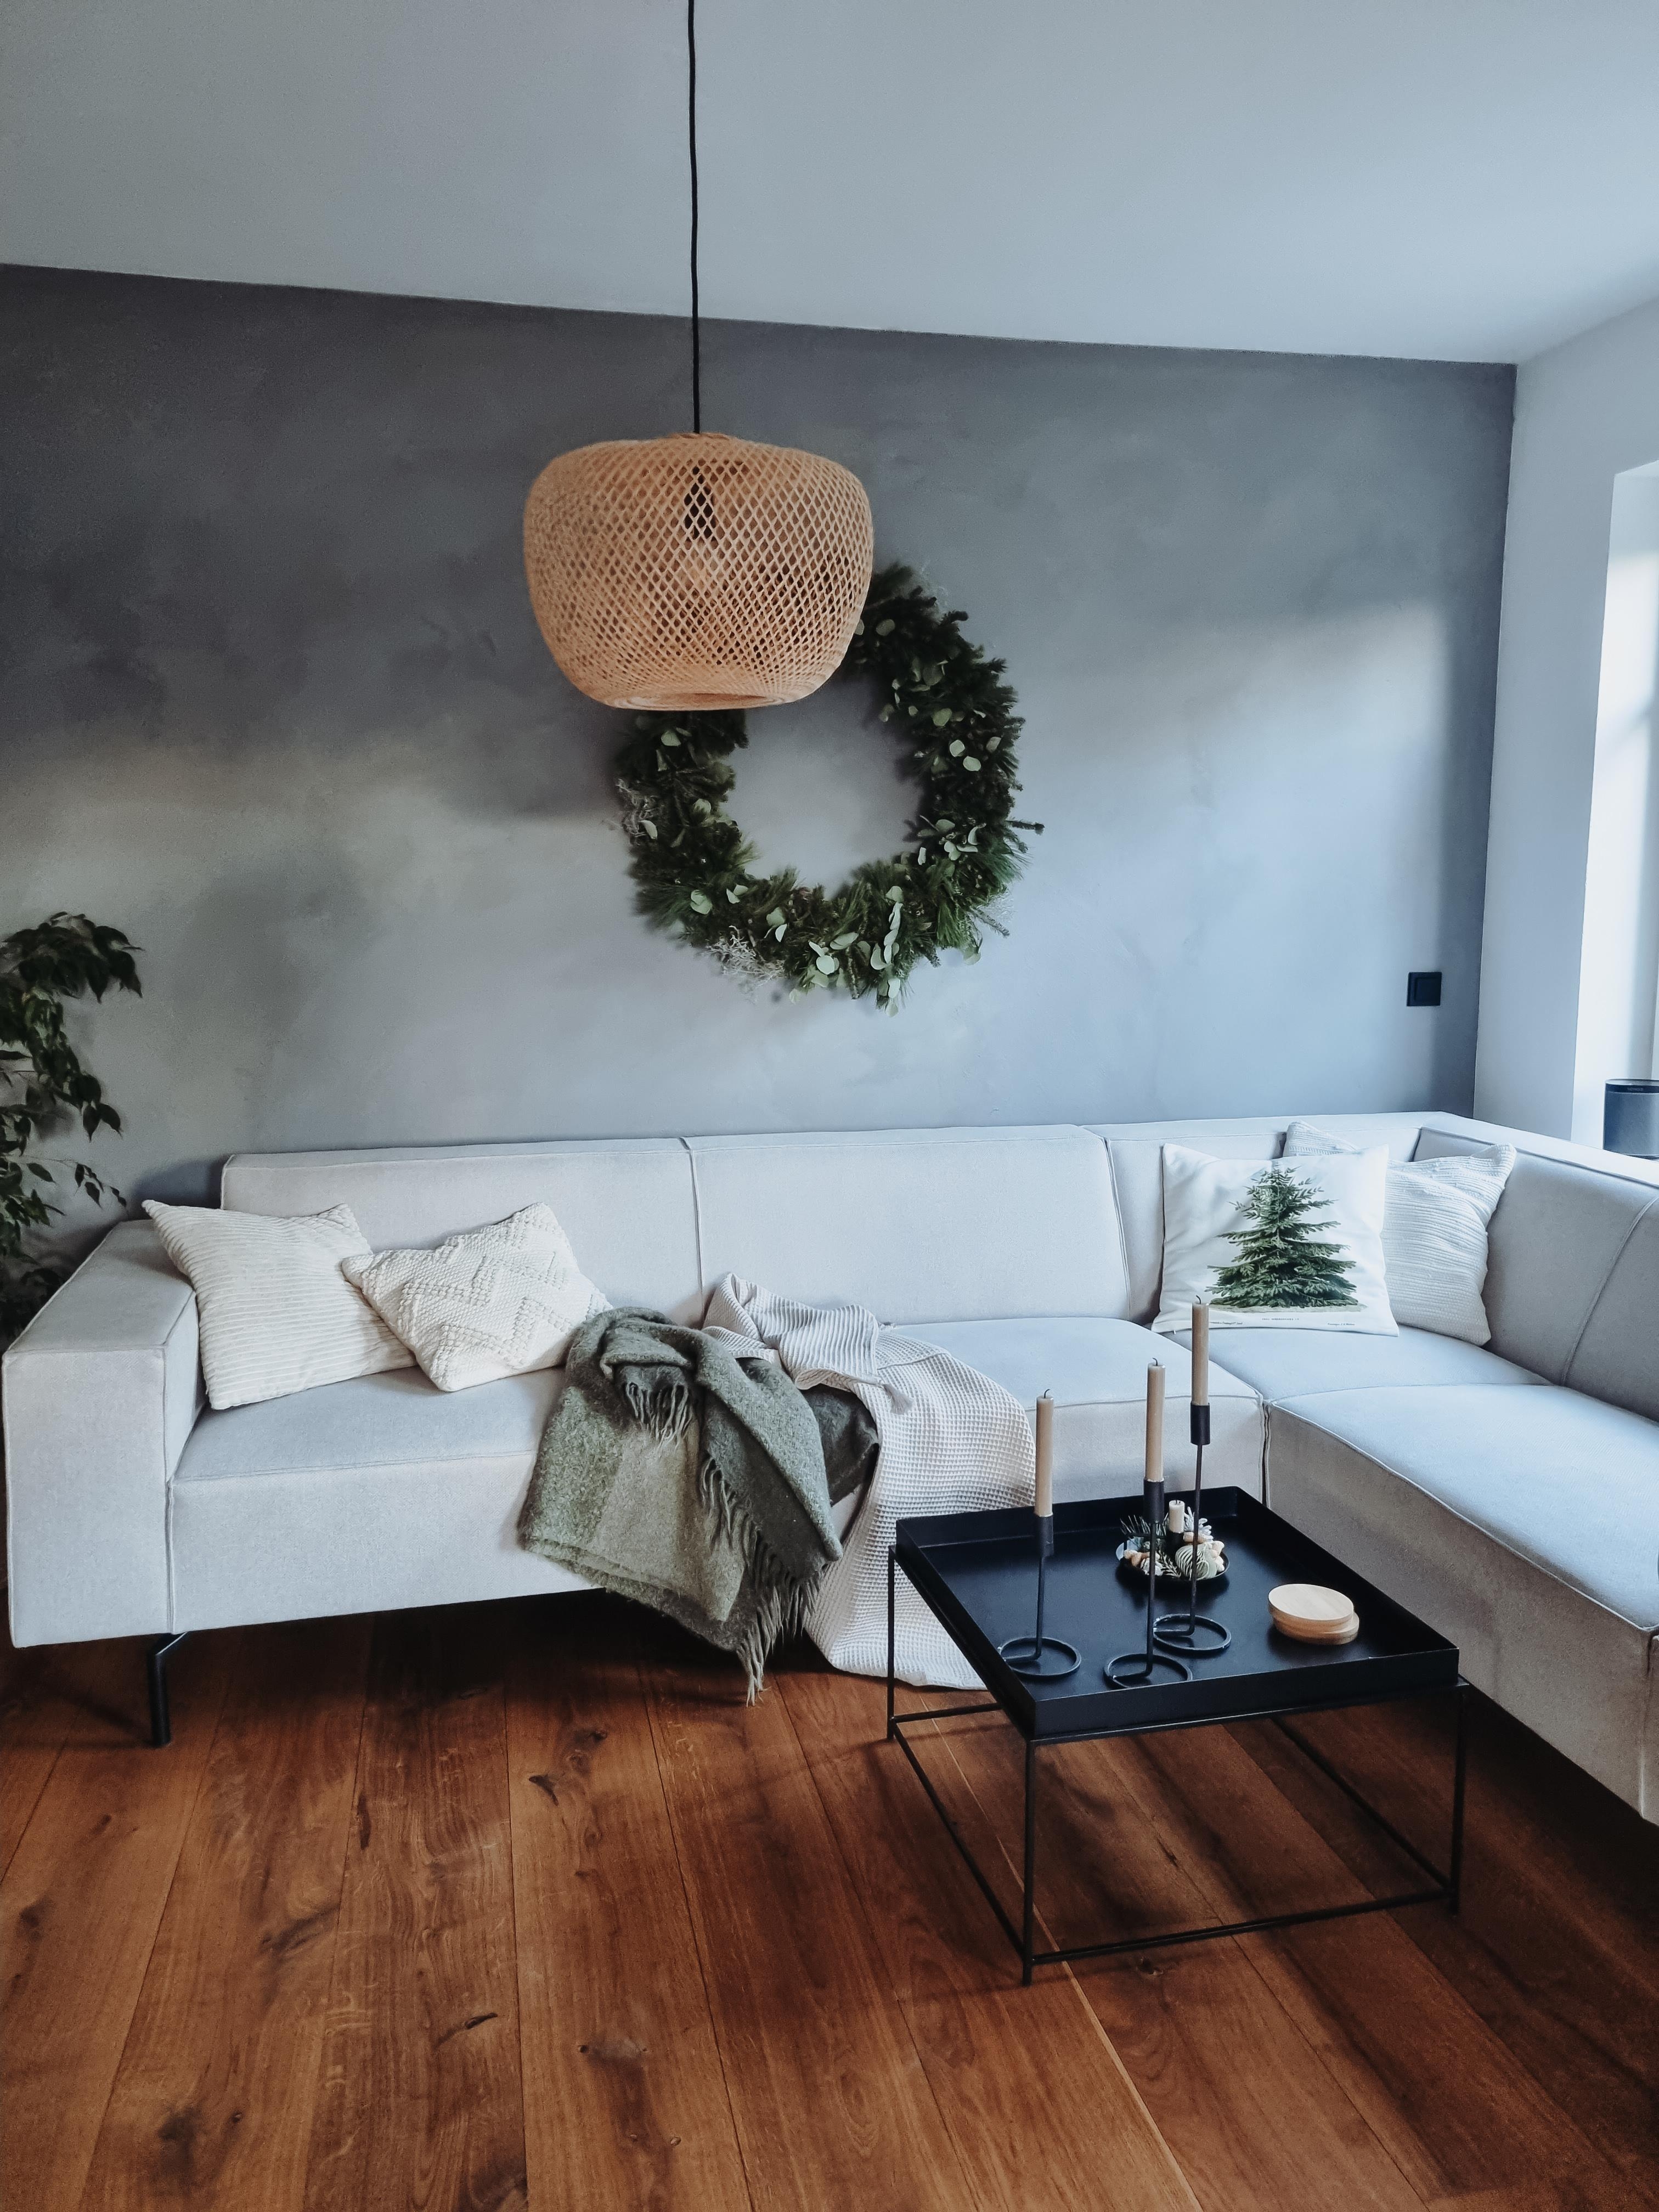 #Wohnzimmer #mynordicroom #Kranz #Weihnachtskranz #wreath  #Adventsdeko #Eukalyptus 